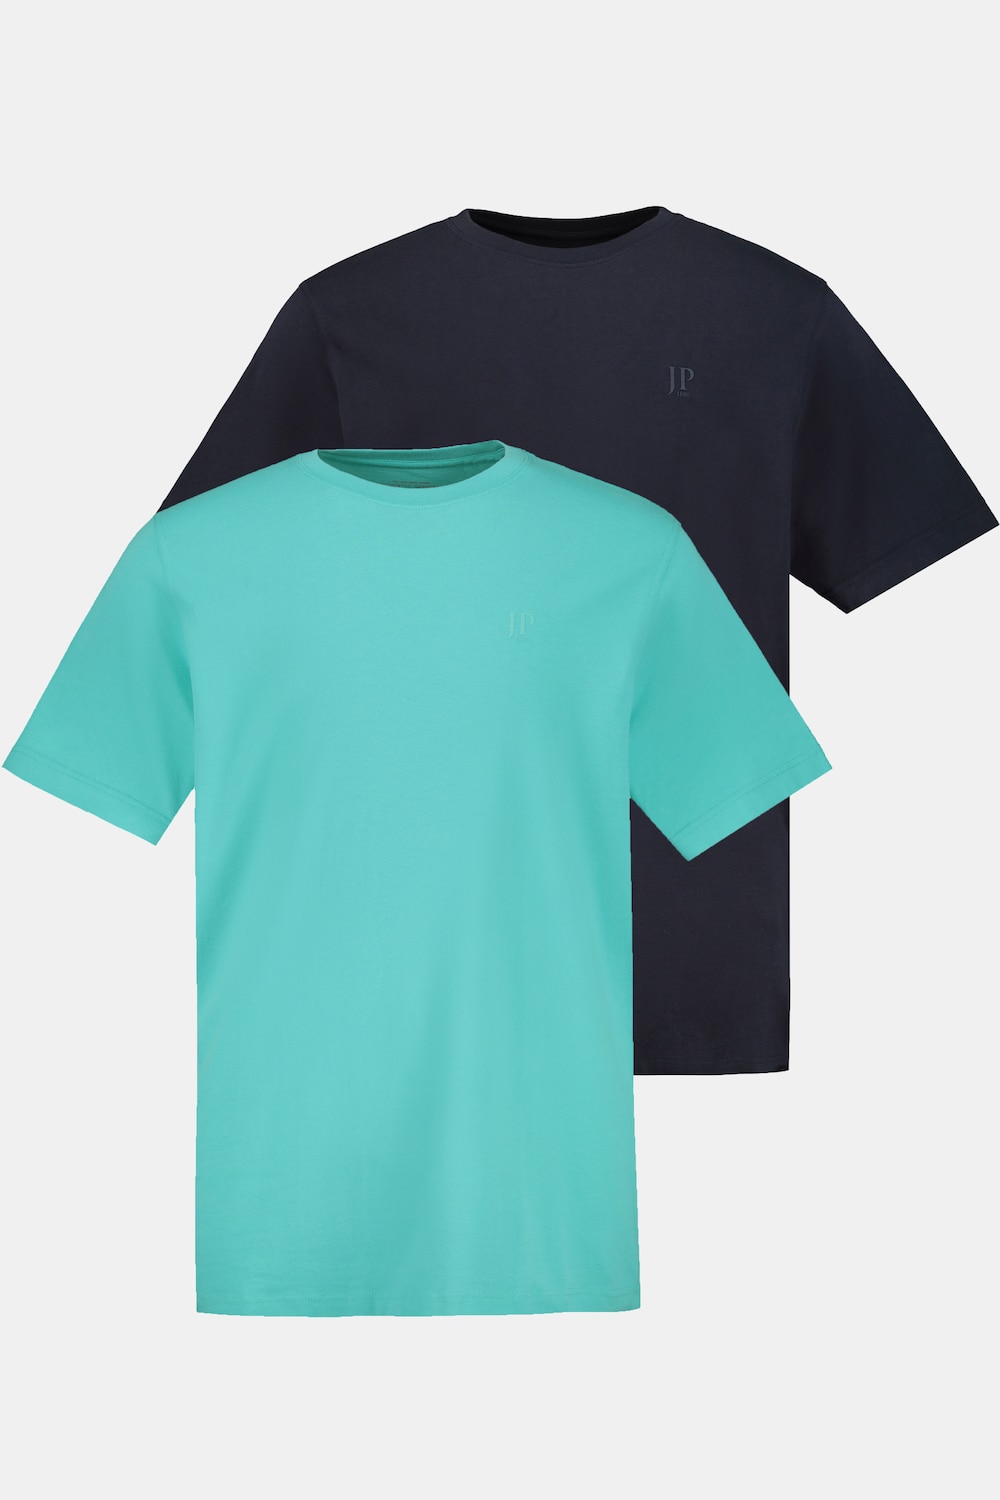 Grote Maten T-shirt, Heren, turquoise, Maat: 8XL, Katoen, JP1880